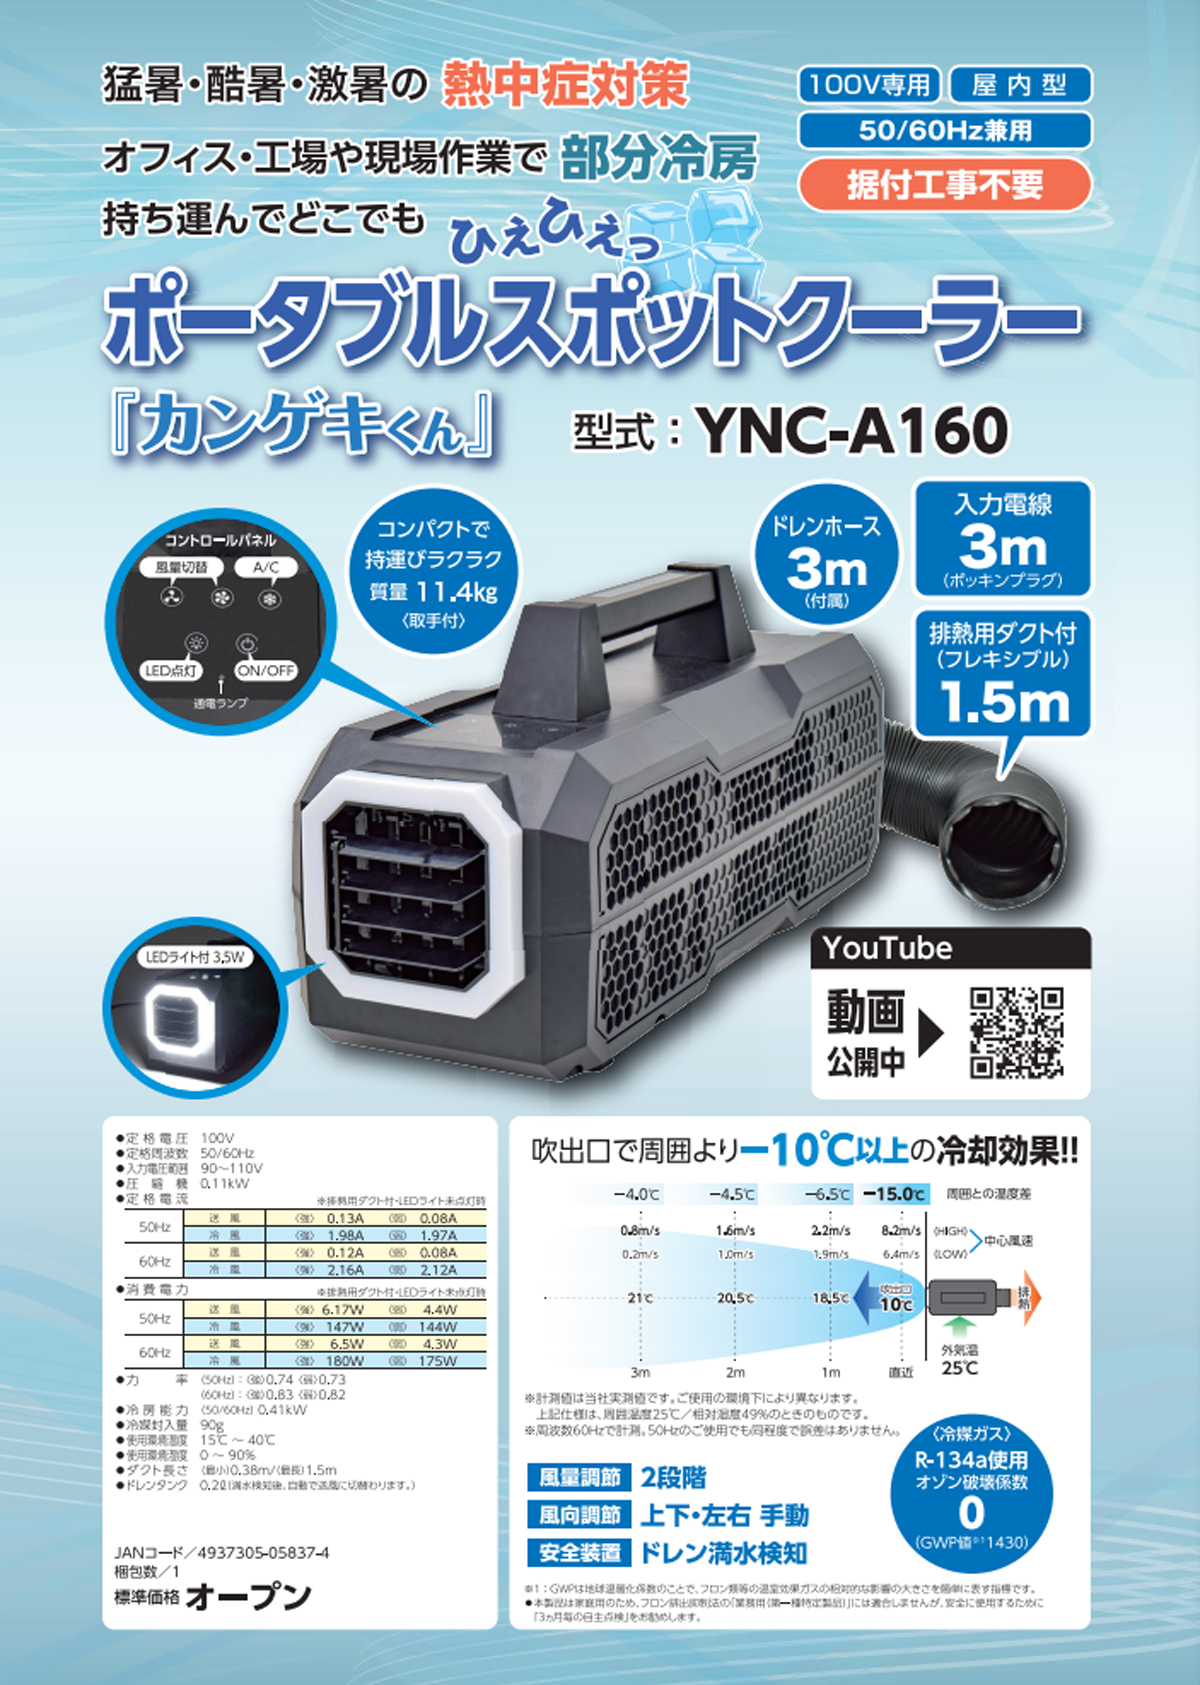 ポータブルスポットクーラー「カンゲキくん」YNC-A160